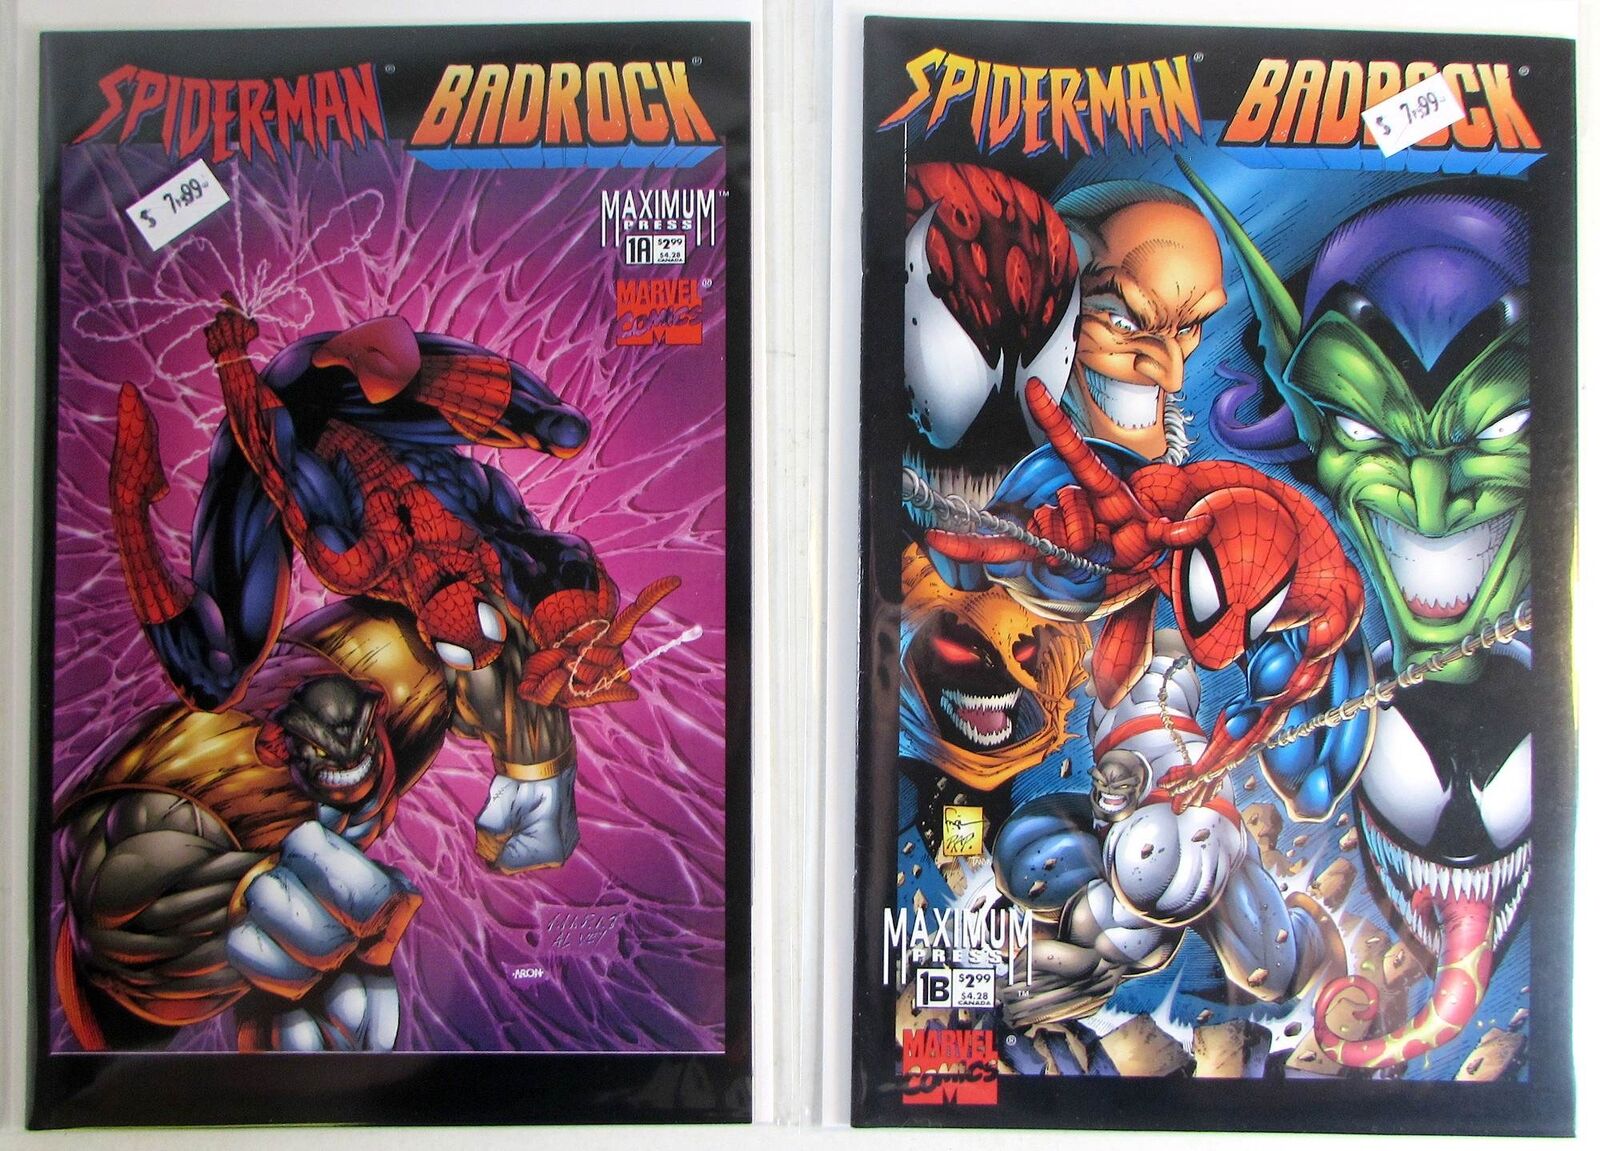 Spider-Man Badrock Lot of 2 #1a,1b Marvel (1997) Maximum Press 1st Print Comics